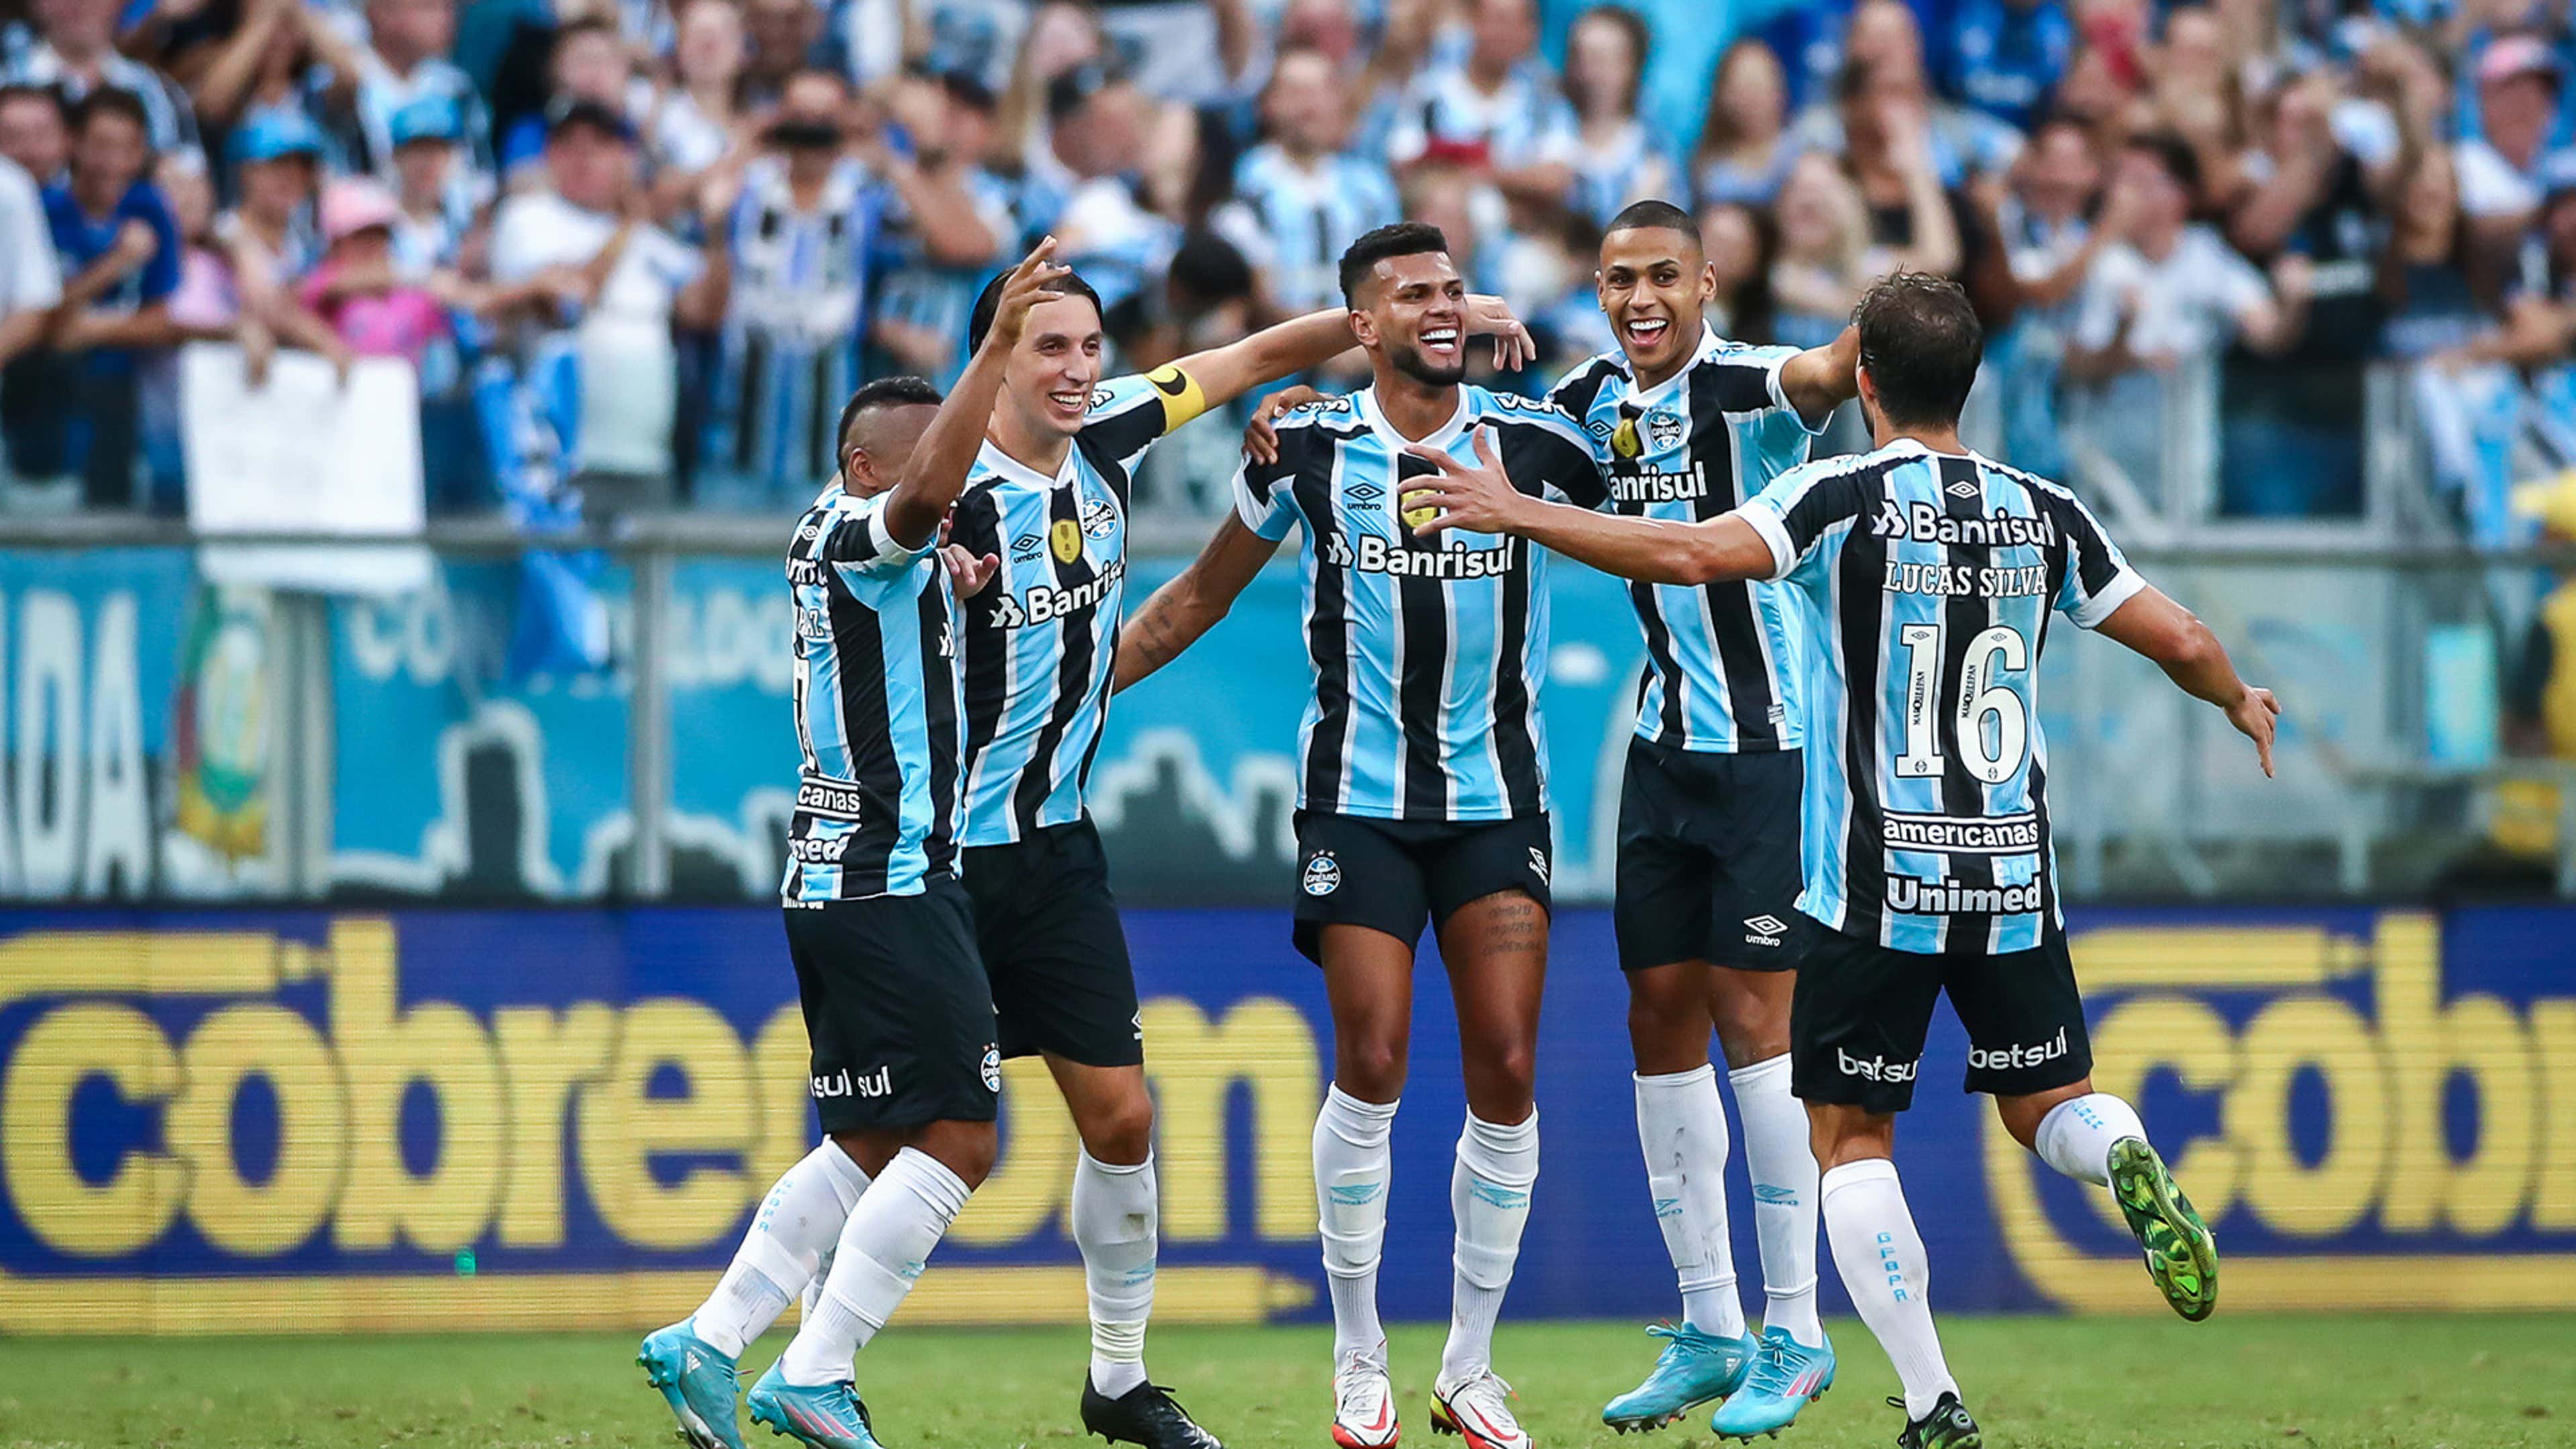 Próximos jogos do Grêmio: datas, horários e onde assistir ao vivo